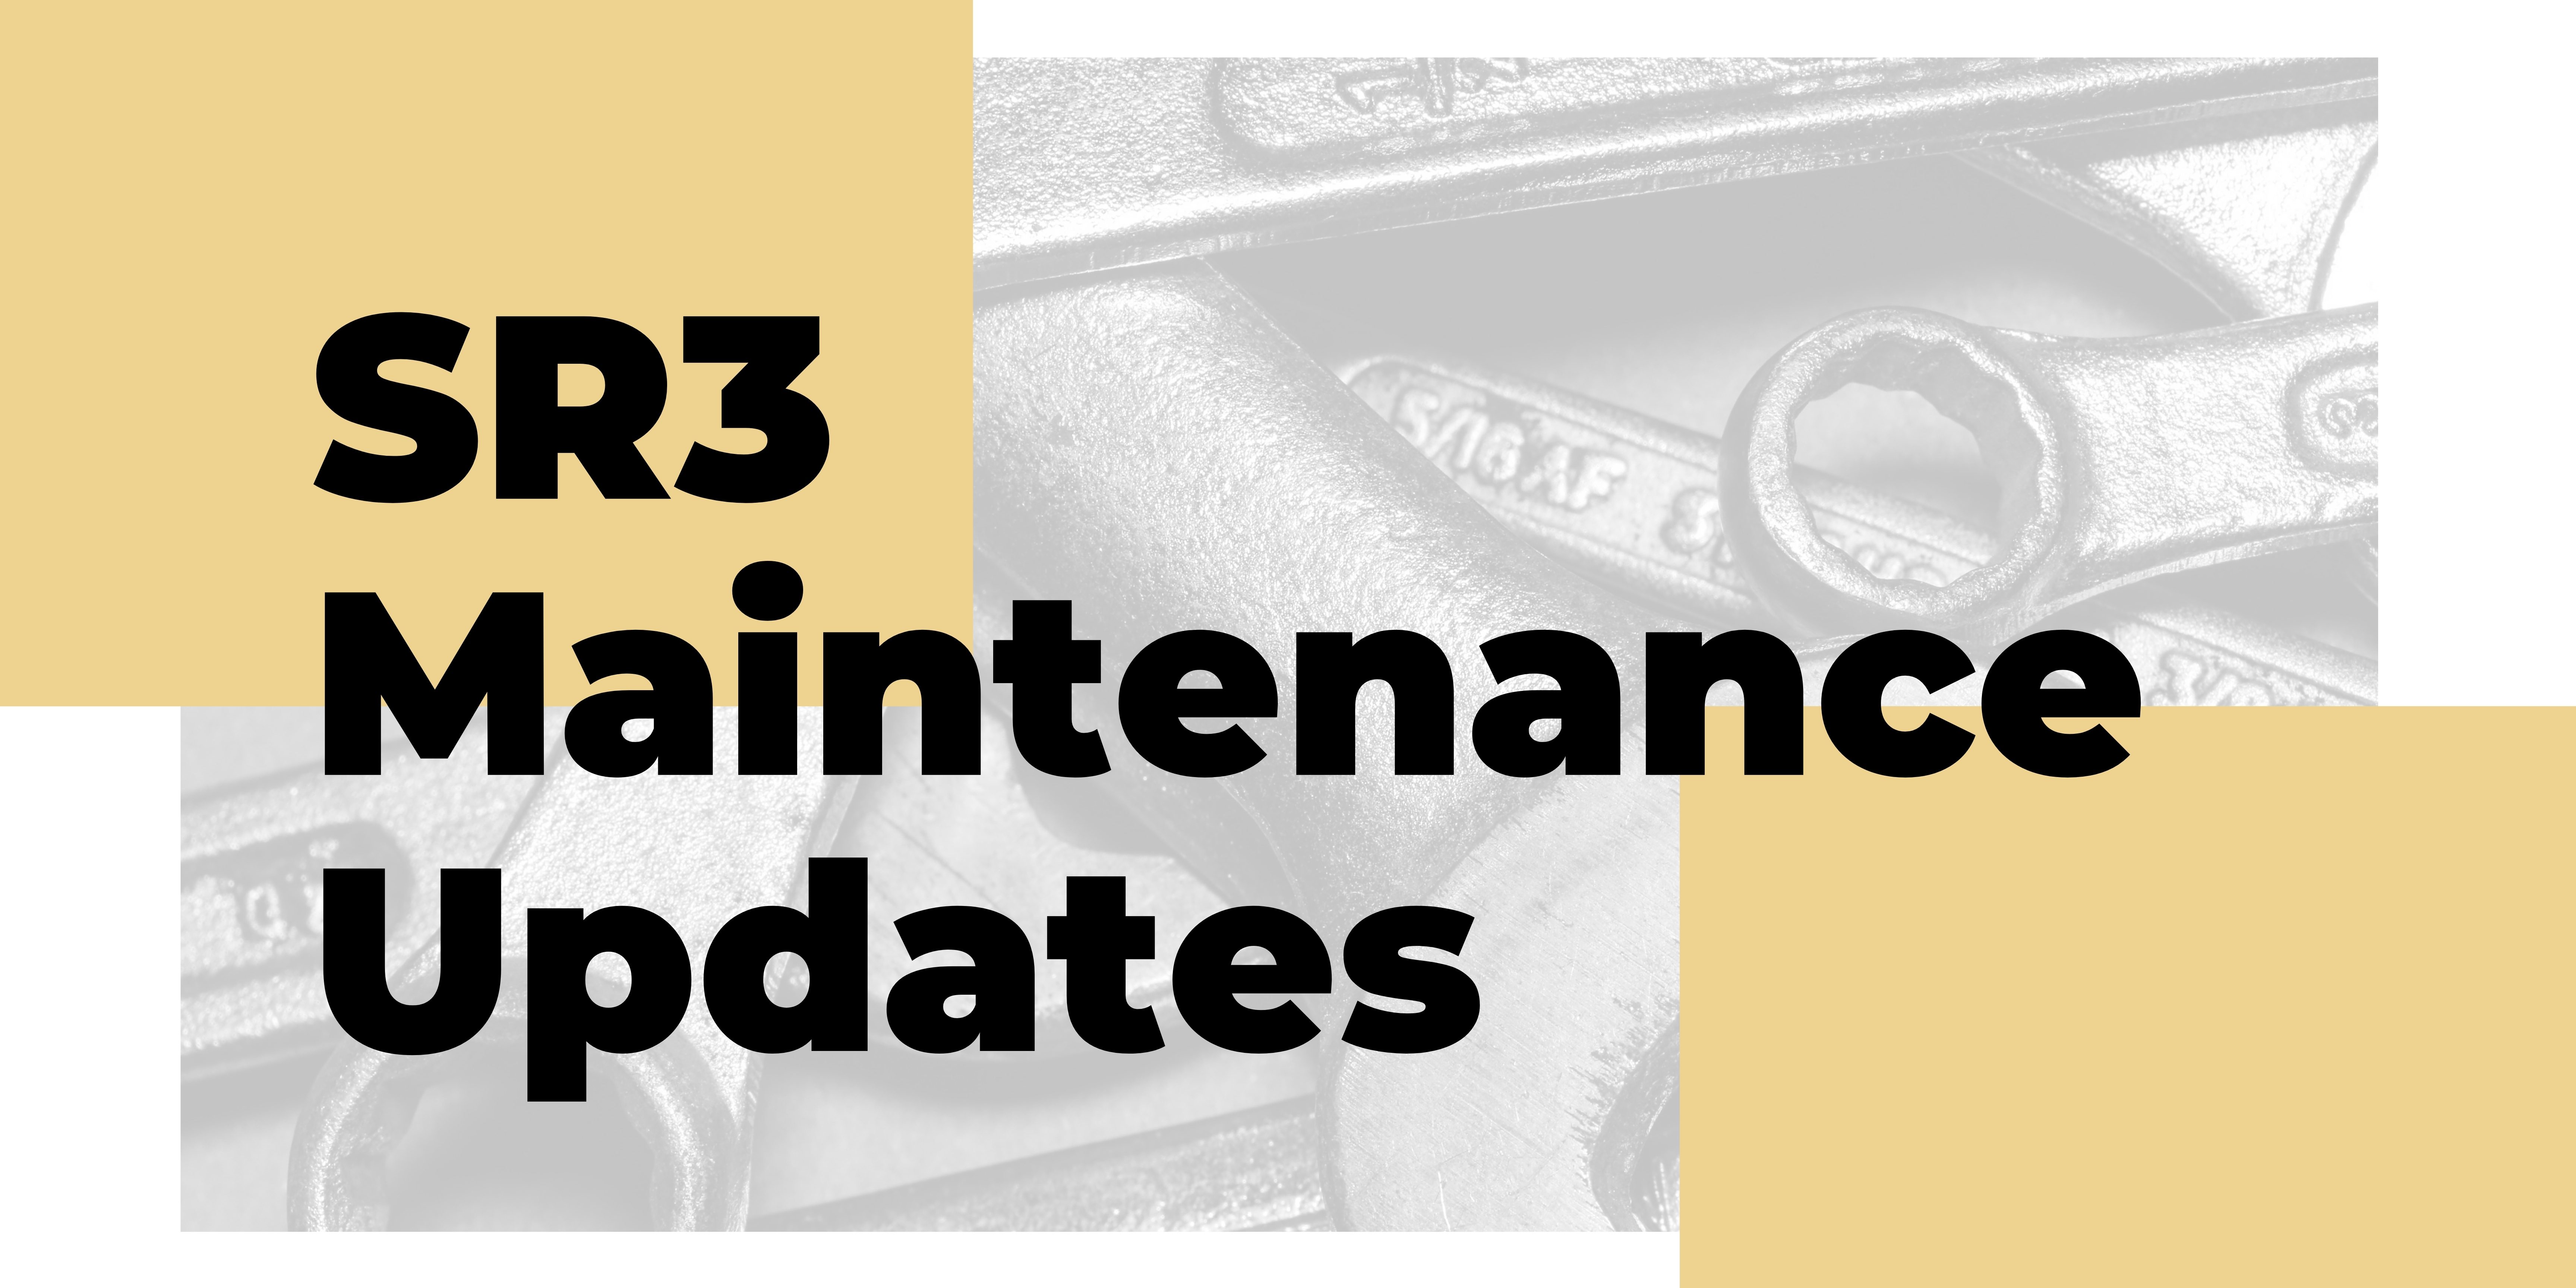 SR3 Maintenance Updates